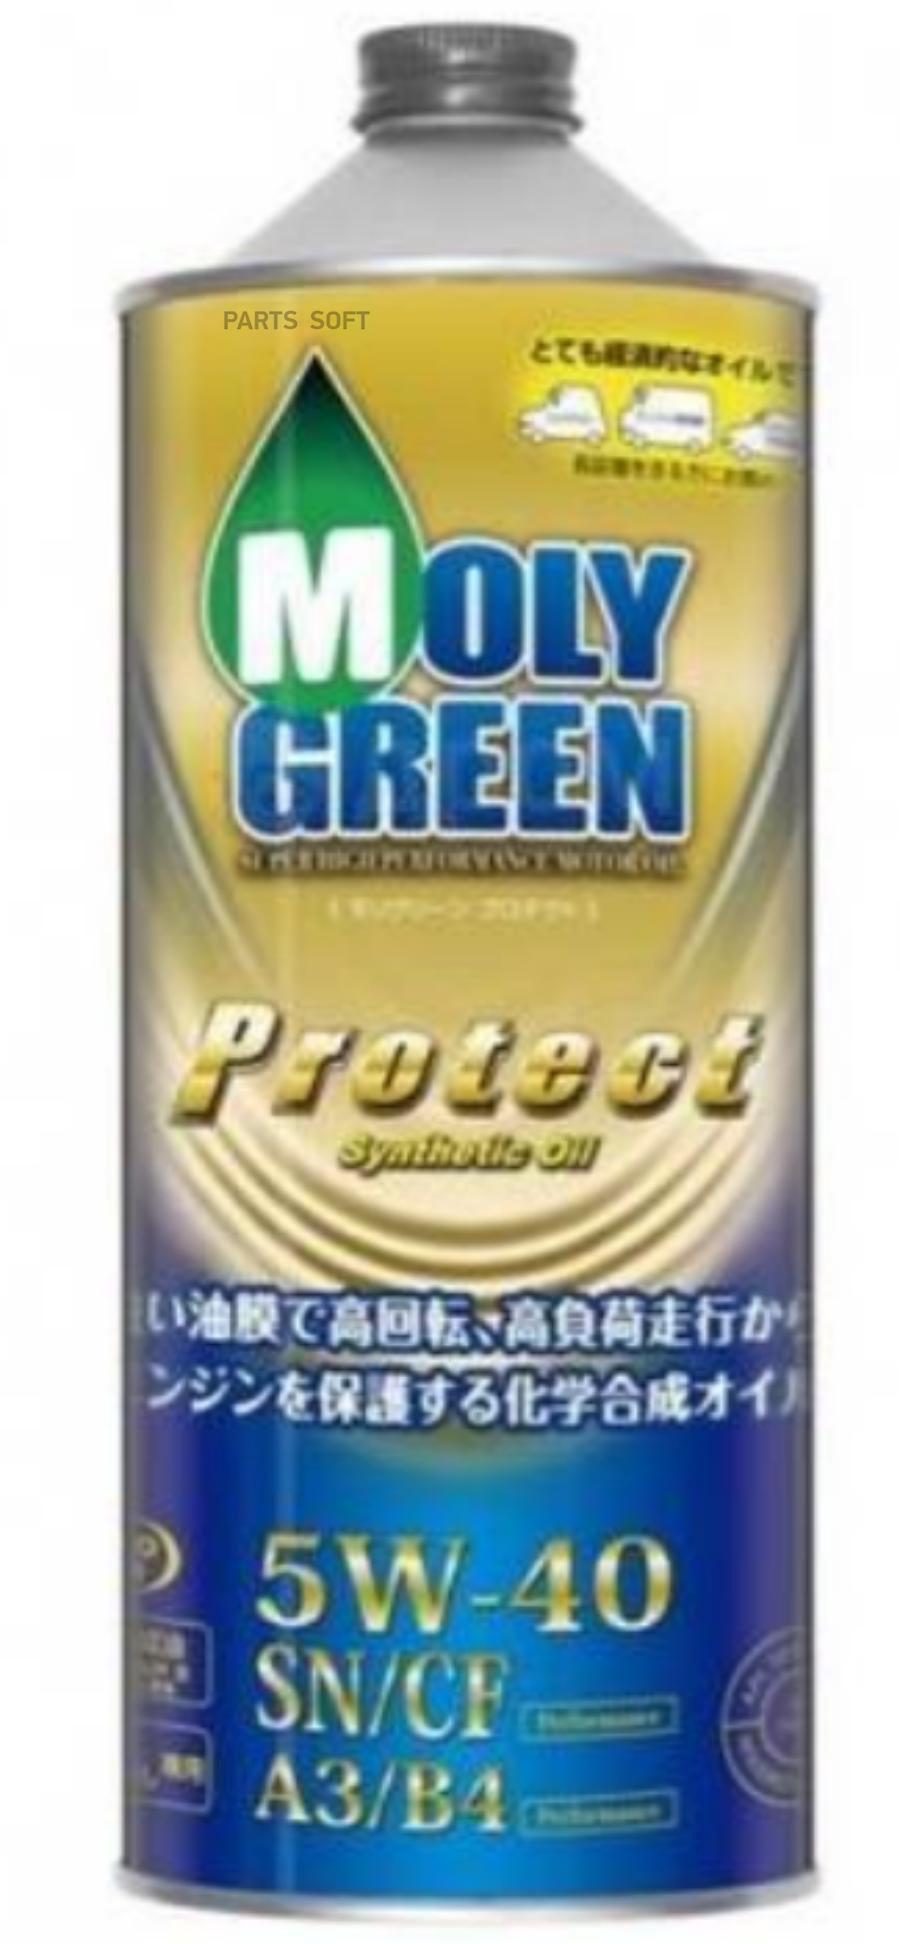 Moly green 5w40. Моли Грин 5w40. Moly Green selection 5w40. Moly Green selection 5w30 бочка 200. Moly Green 5 w 40 синтетика для бензиновых двигателей.